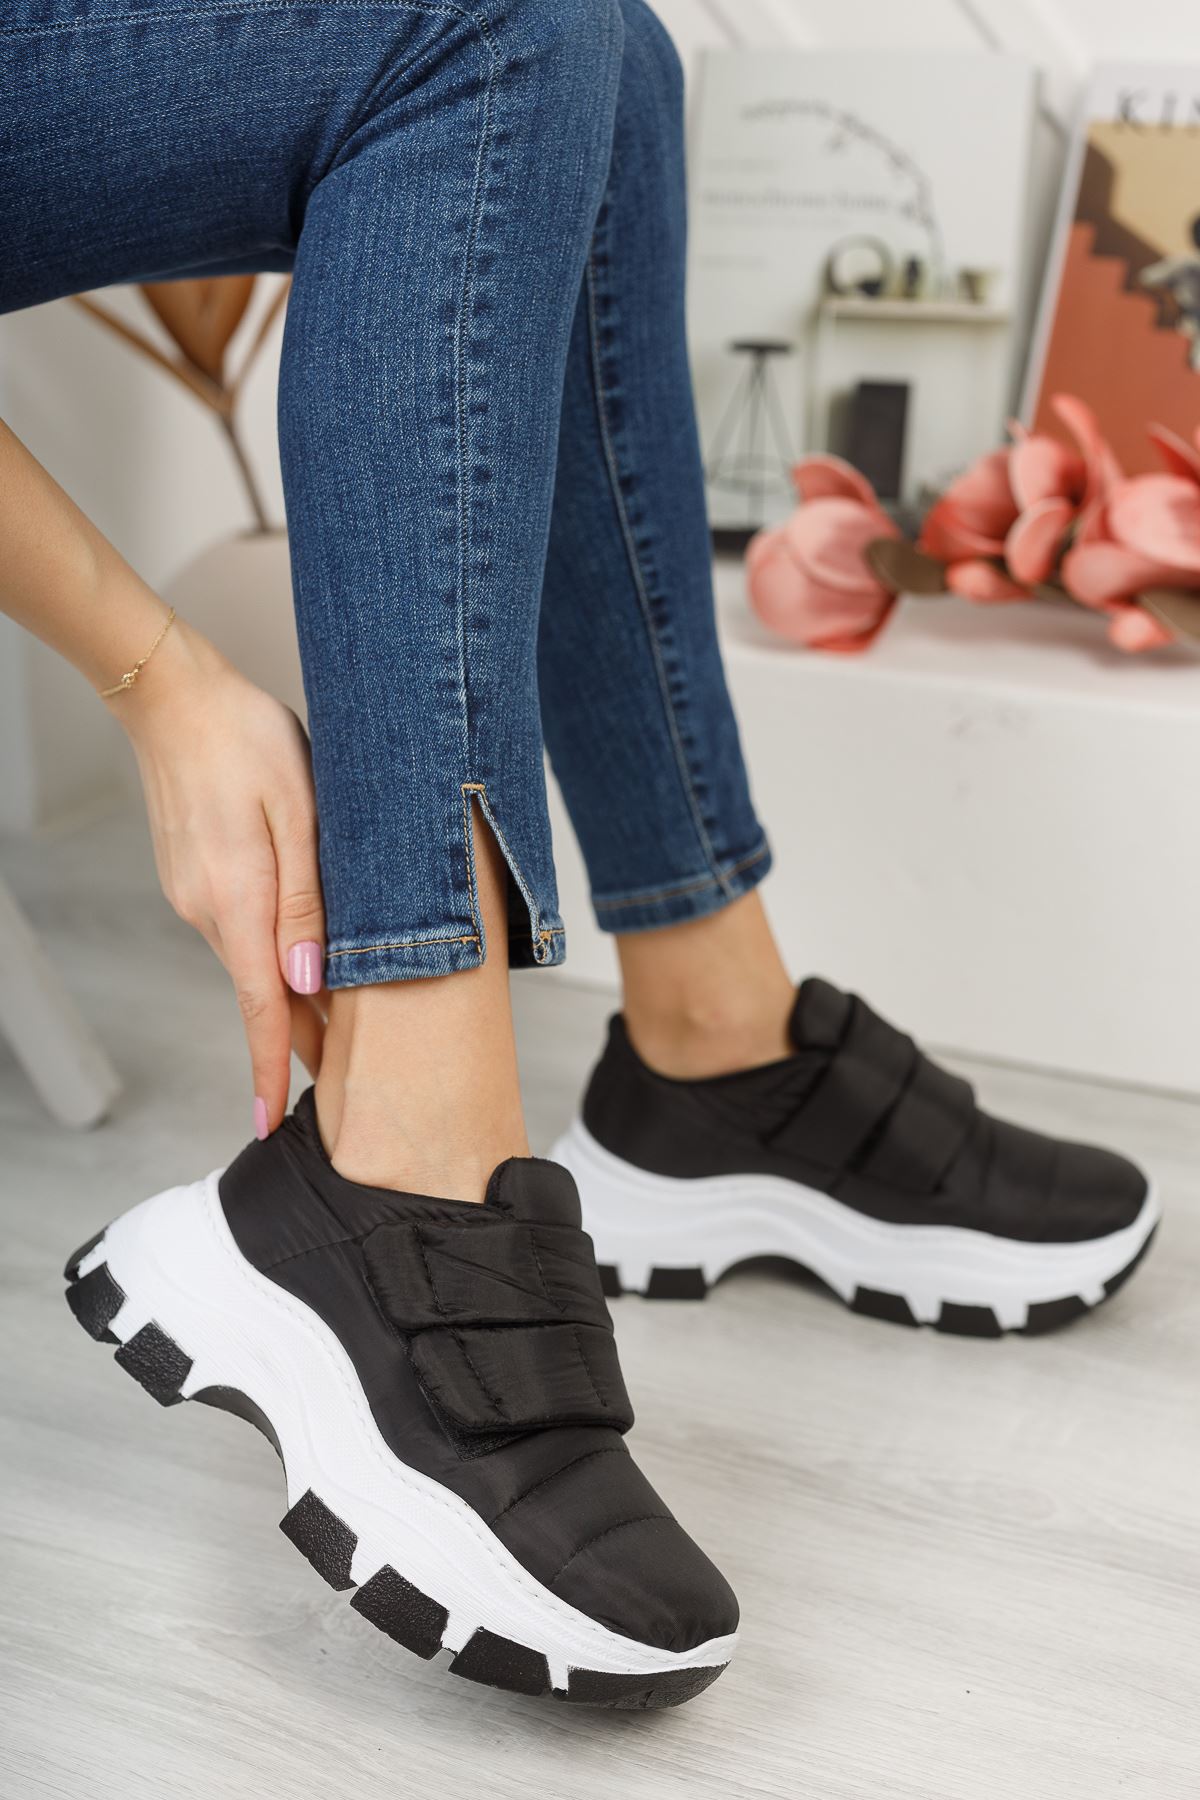 Mulo Siyah Cırt Cırt Detay Yüksek Taban Bayan Spor Ayakkabı